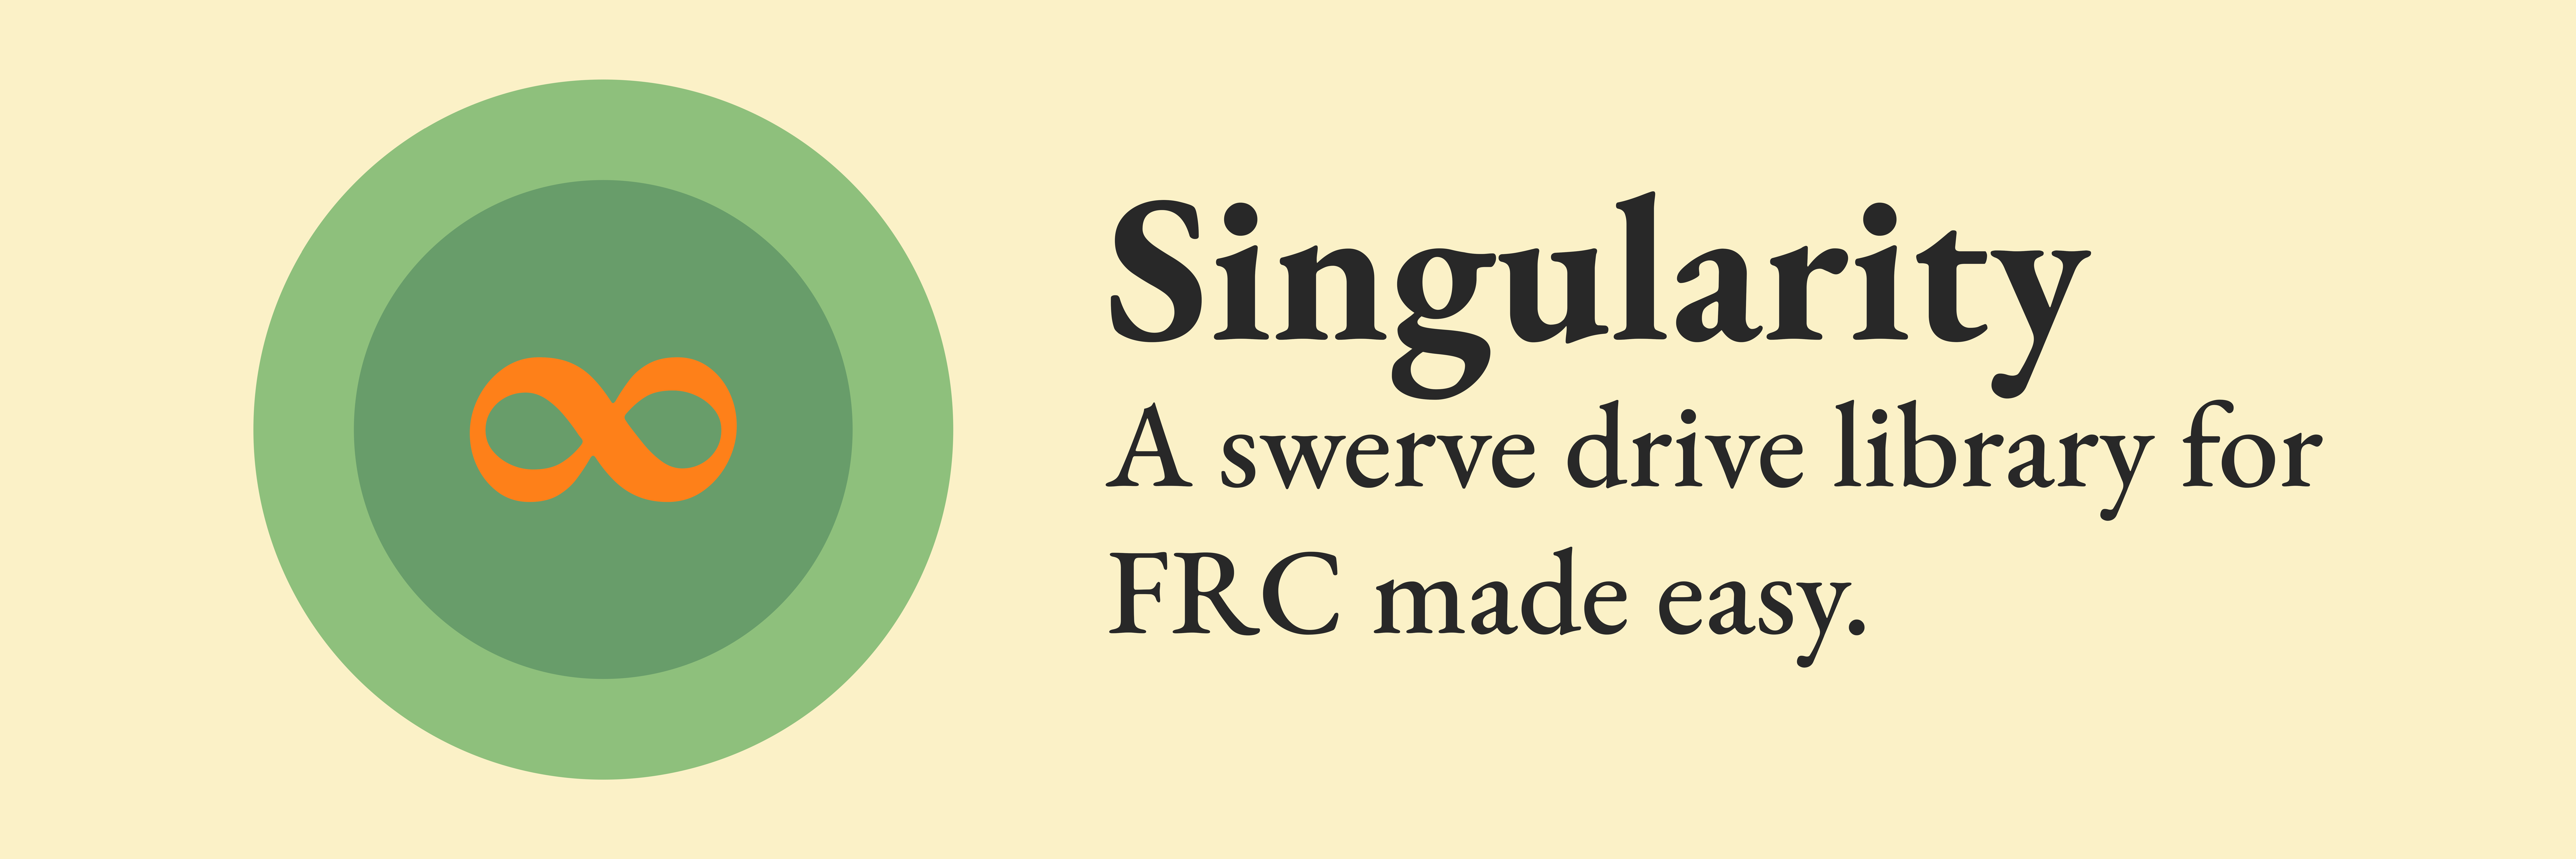 Singularity Logo